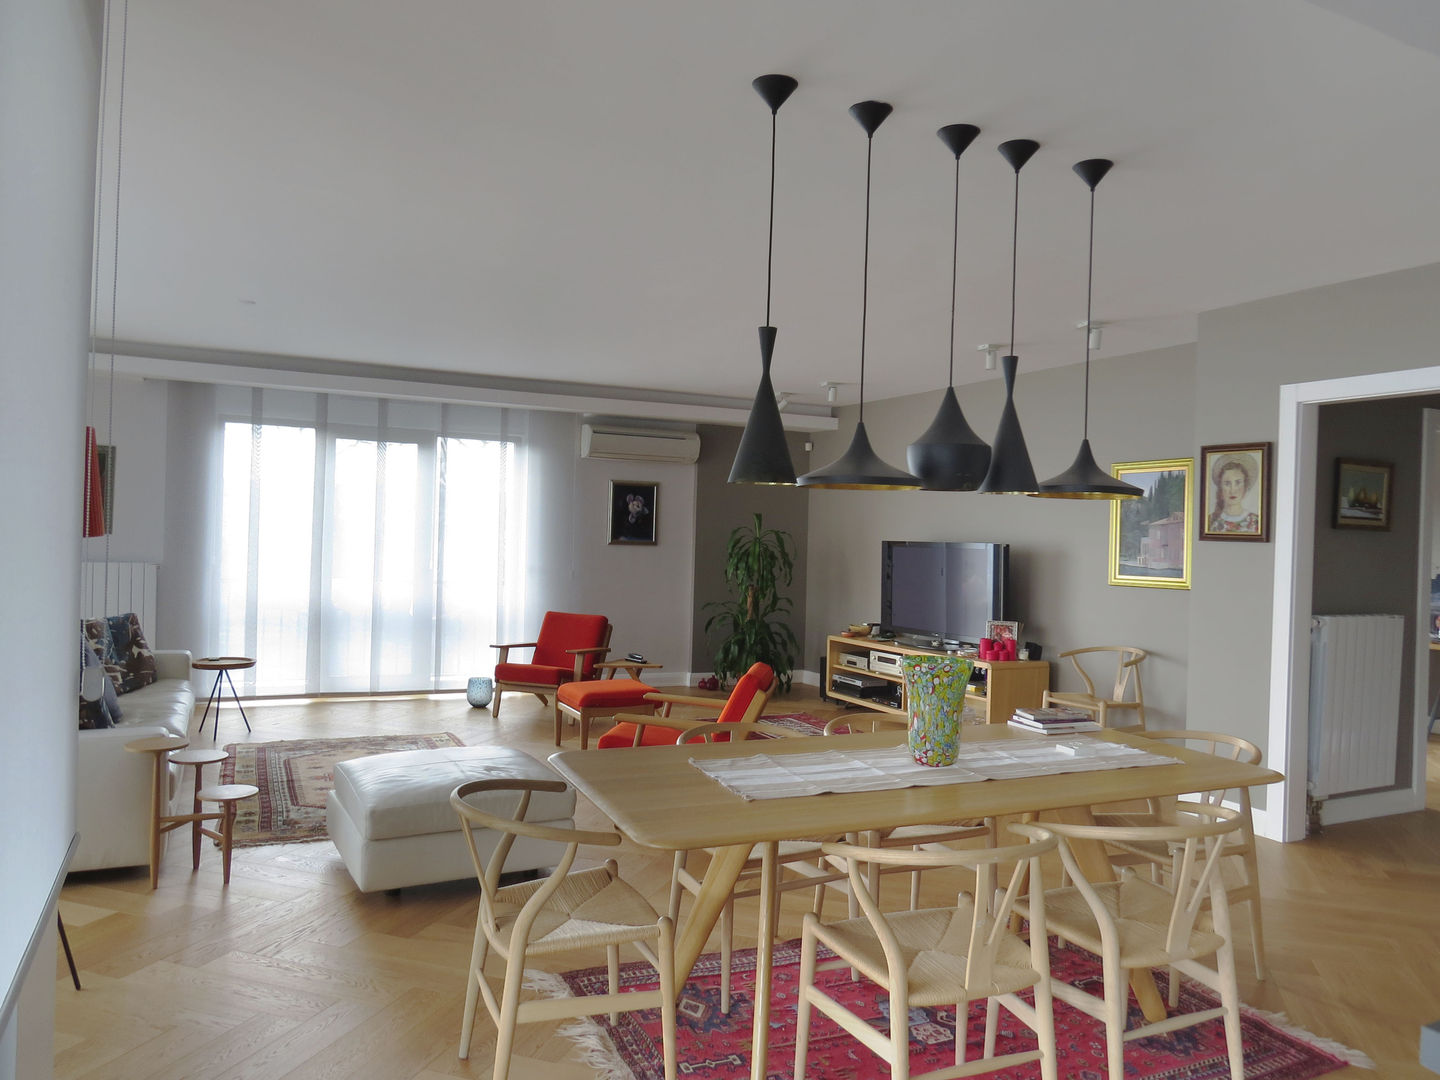 Salon MİMPERA İskandinav Oturma Odası Masif Ahşap Rengarenk salon tasarımı,mimari proje,uygulama